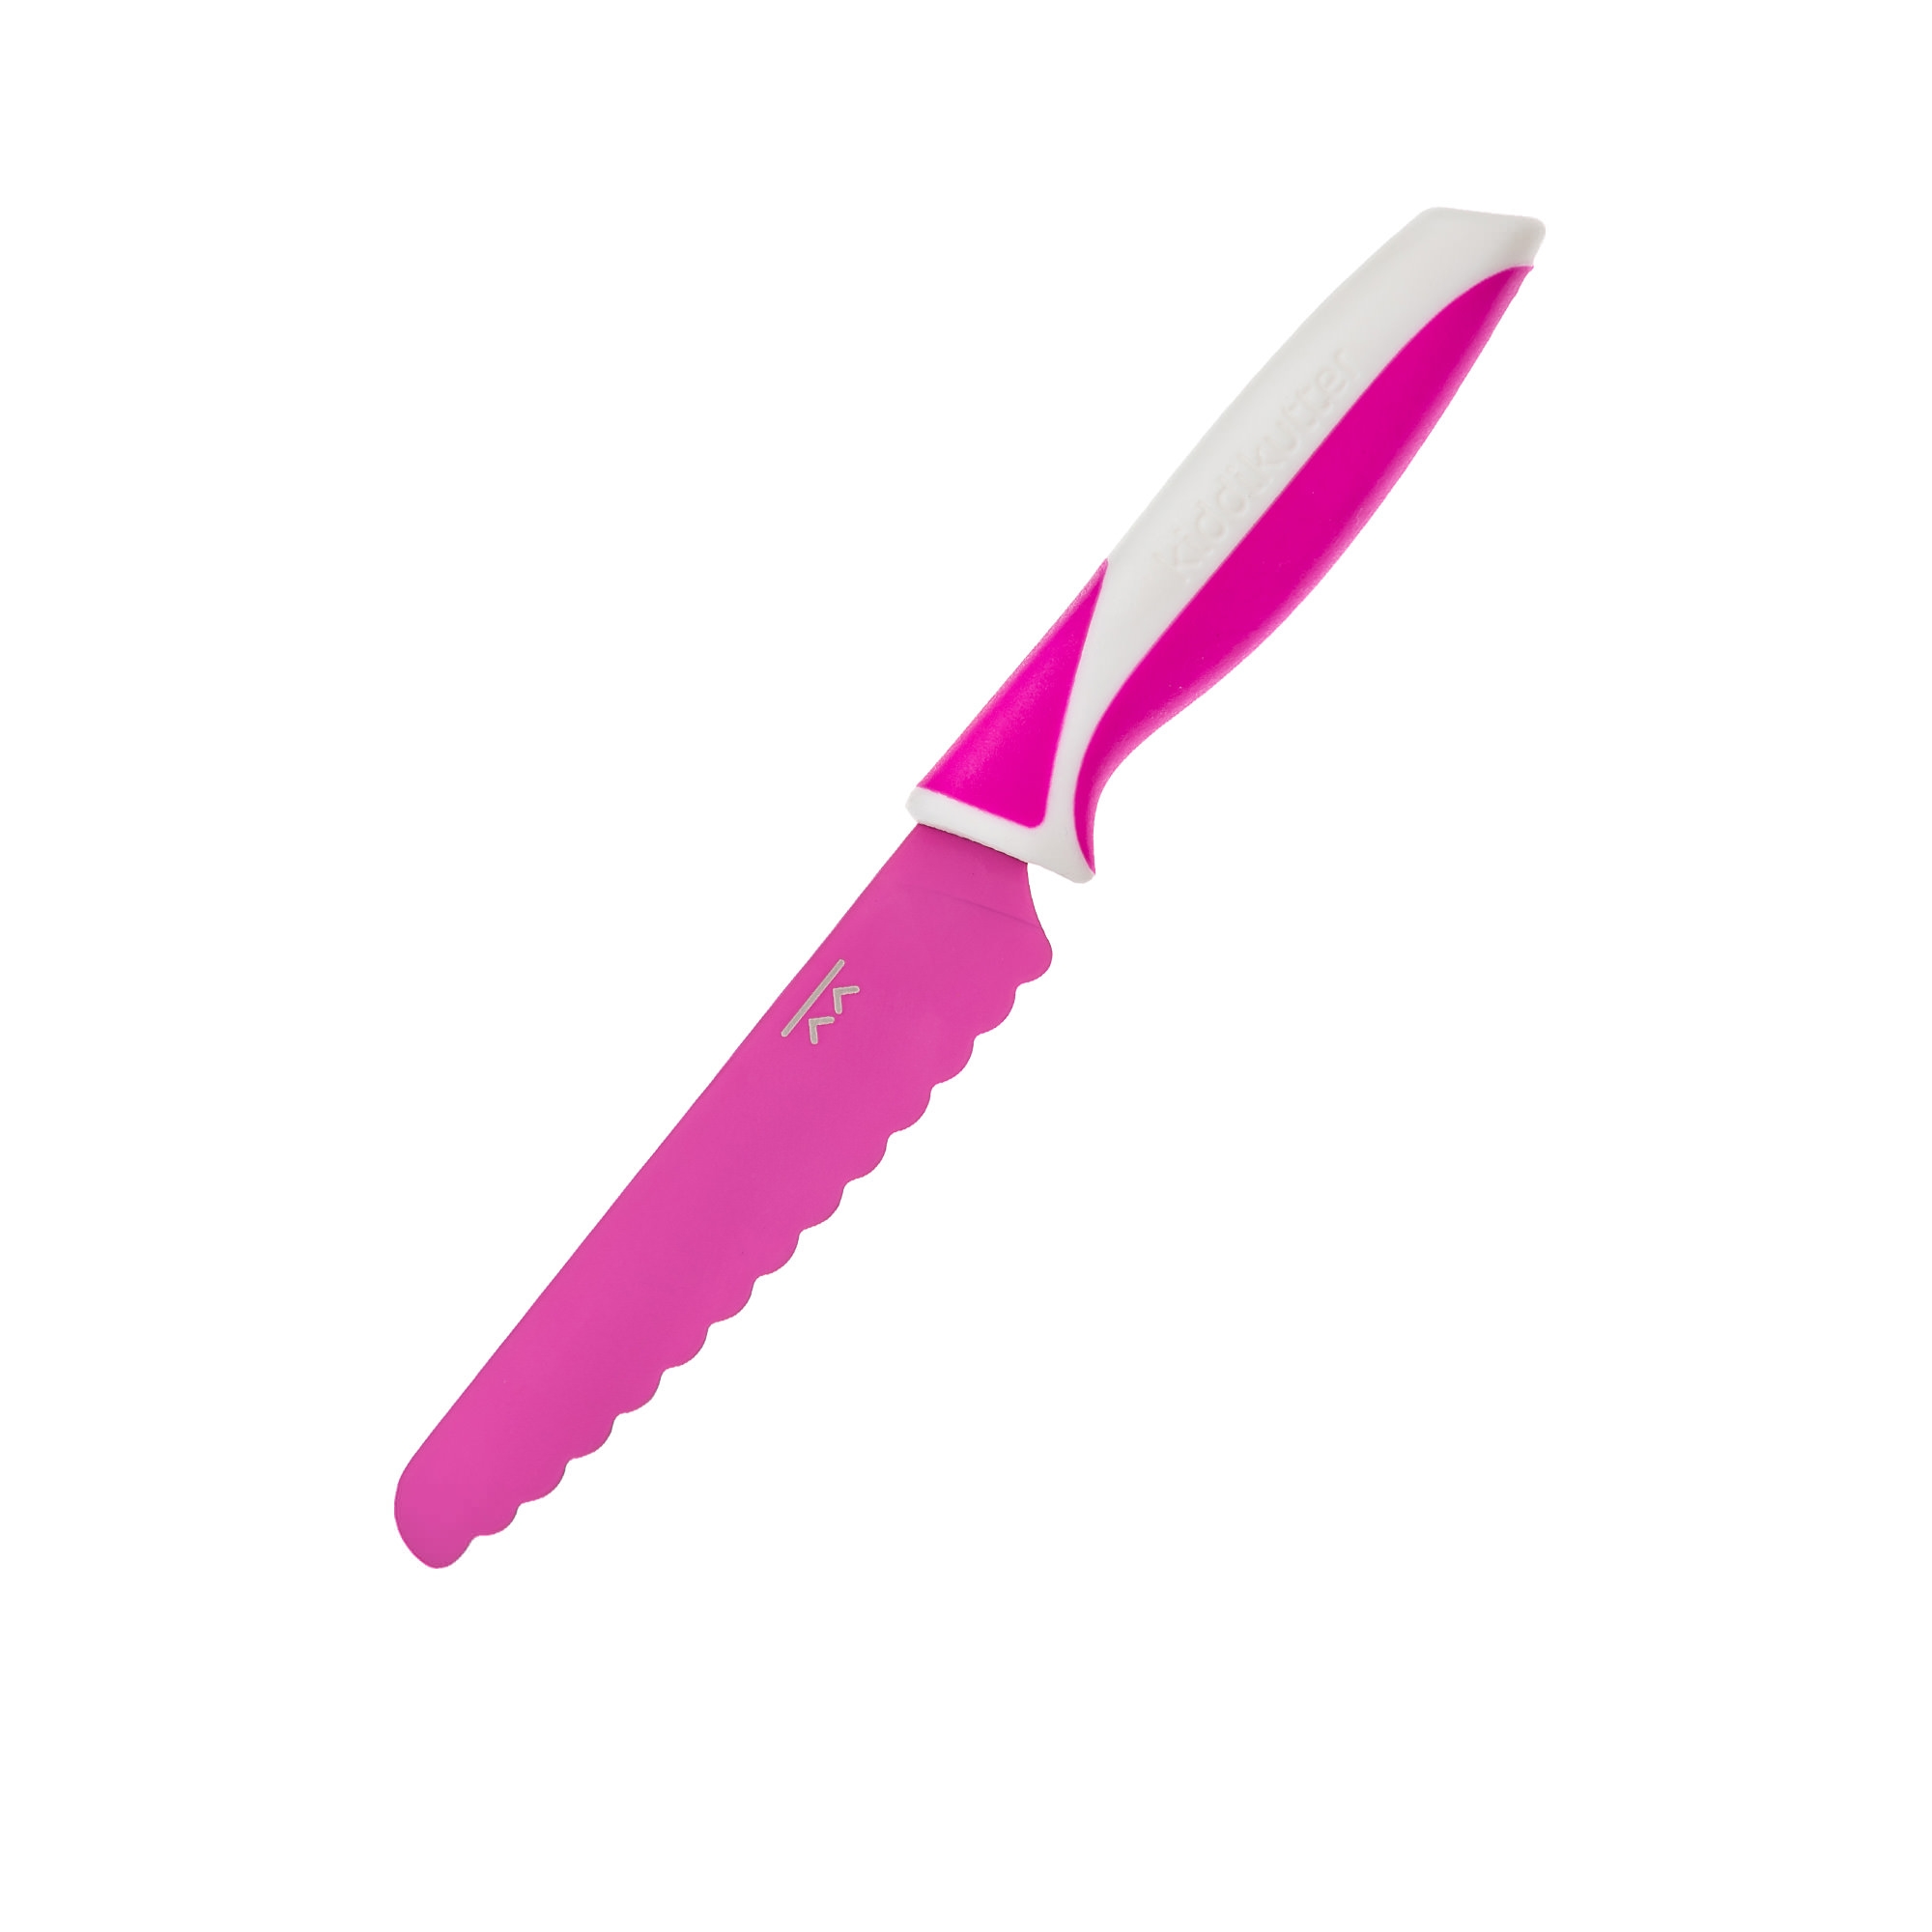 Kiddikutter Child Safe Knife Pink Image 1